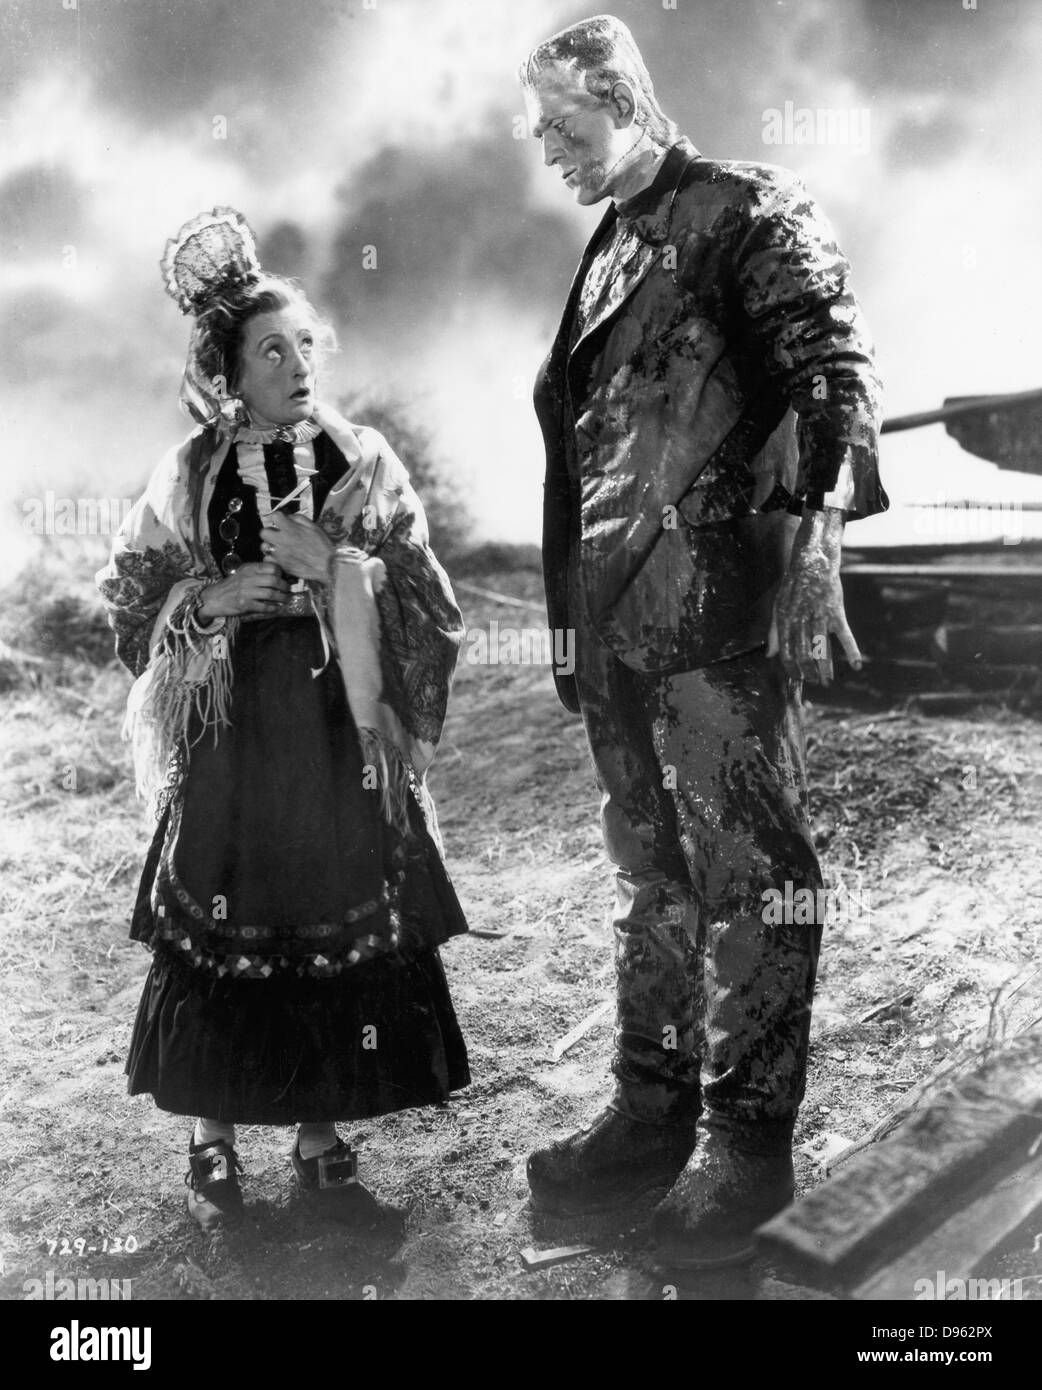 Boris Karloff (1887-1969), britisch-amerikanischer Schauspieler, als das Monster Frankenstein. 1931 Universal Film 'Frankenstein' nach dem Roman von Mary Shelley. Stockfoto